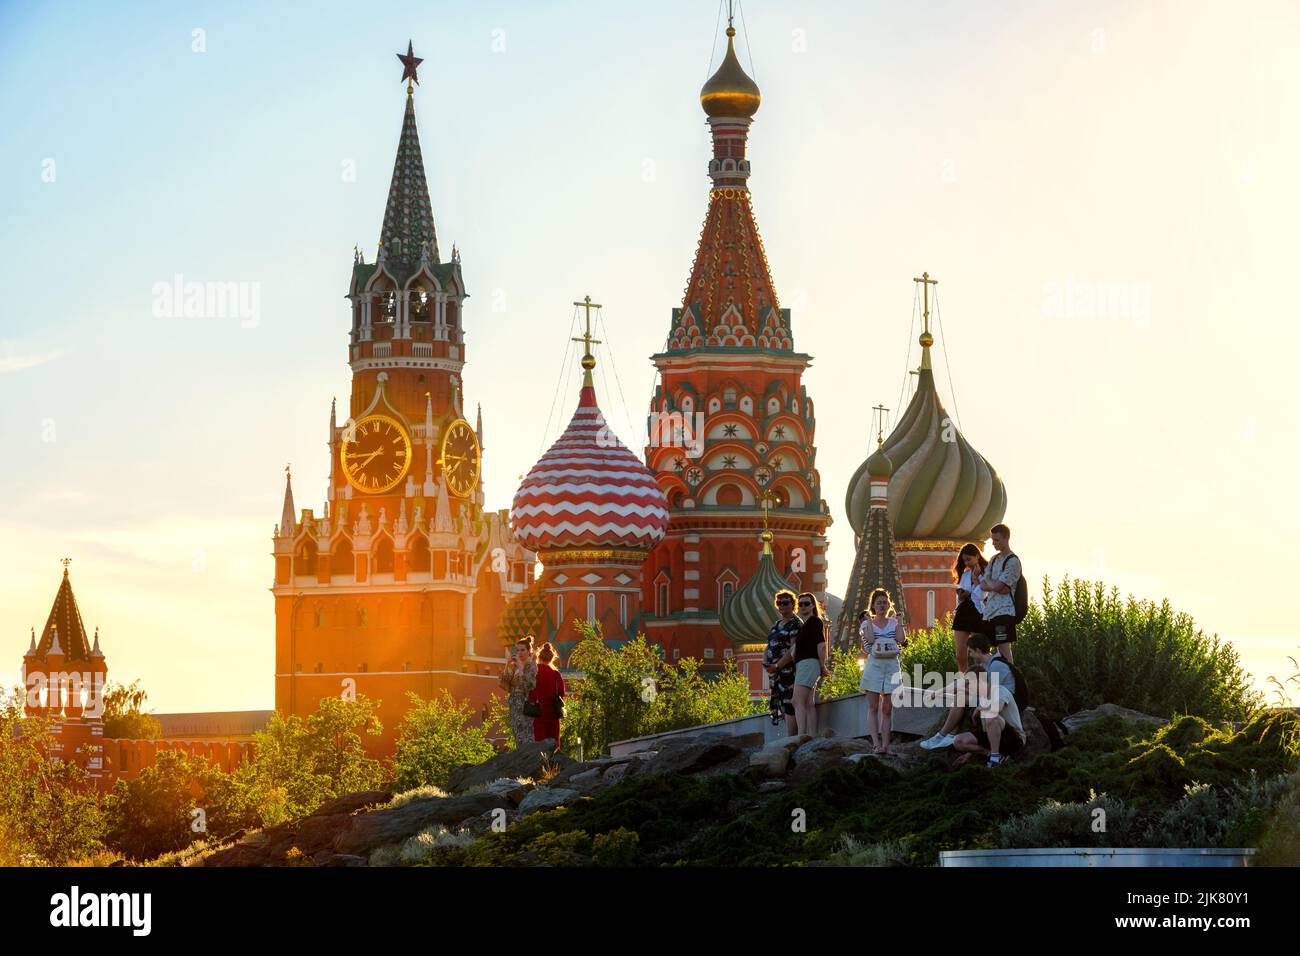 Moskau - 28. Jun 2022: Menschen gehen im Zaryadye Park in der Nähe des Kremls und der Basilius-Kathedrale, Moskau, Russland. Dieser Ort ist berühmte Touristenattraktion von Stockfoto